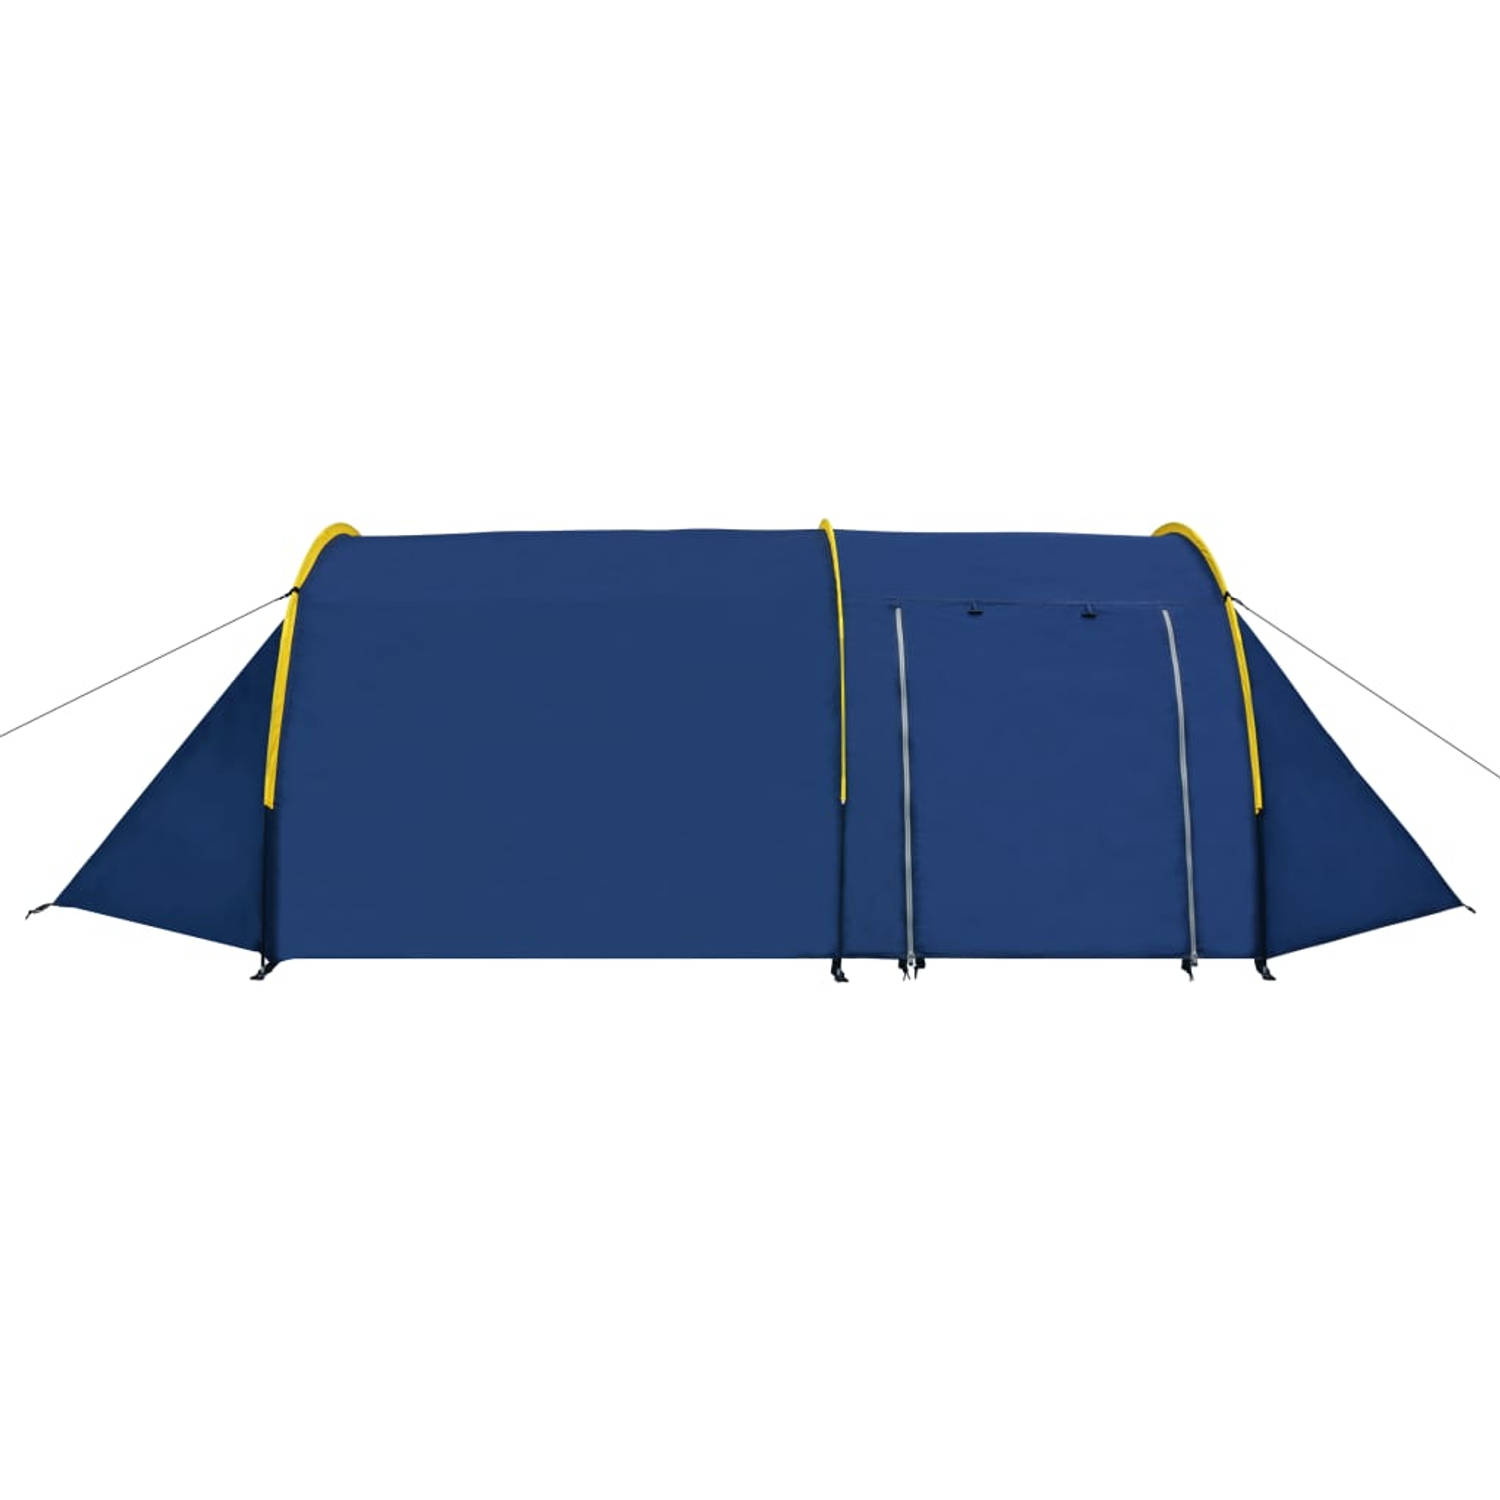 The Living Store Kampeertent - Grote - 4-persoons tent - Marine Blauw/Geel - 395x180x110 cm - Ademend materiaal